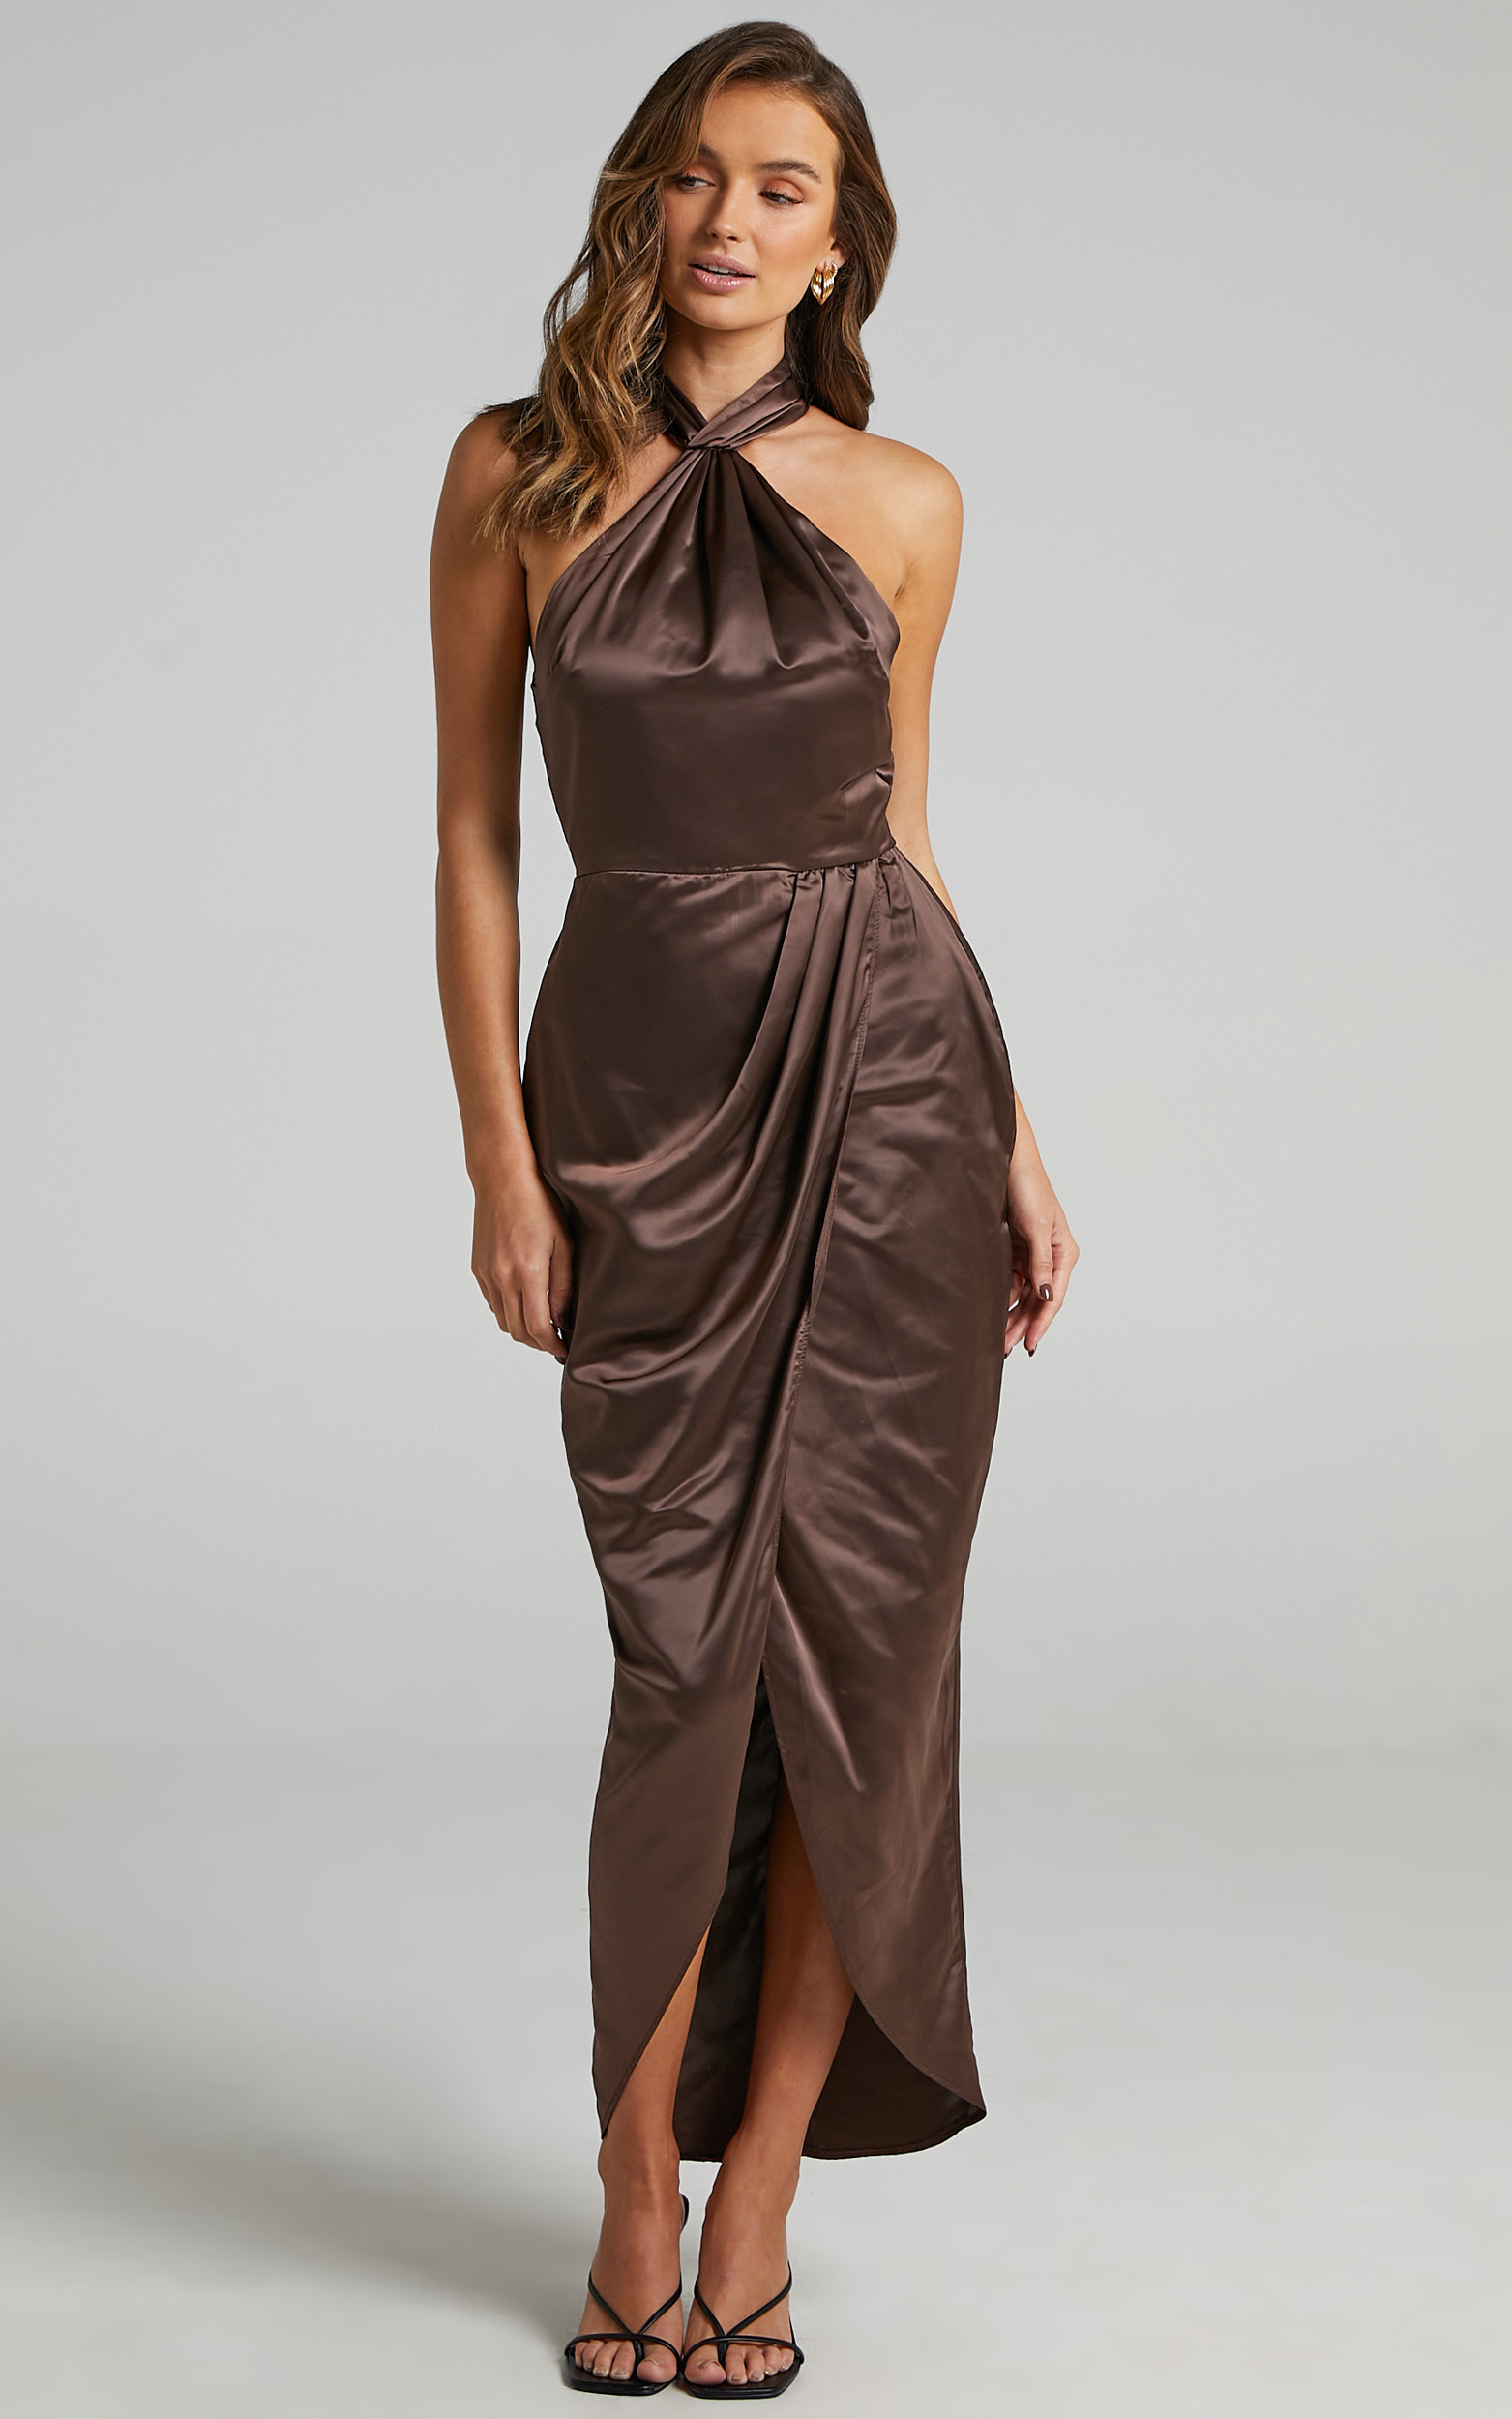 Unreal Dream Midi Dress in Chocolate Satin | Showpo USA